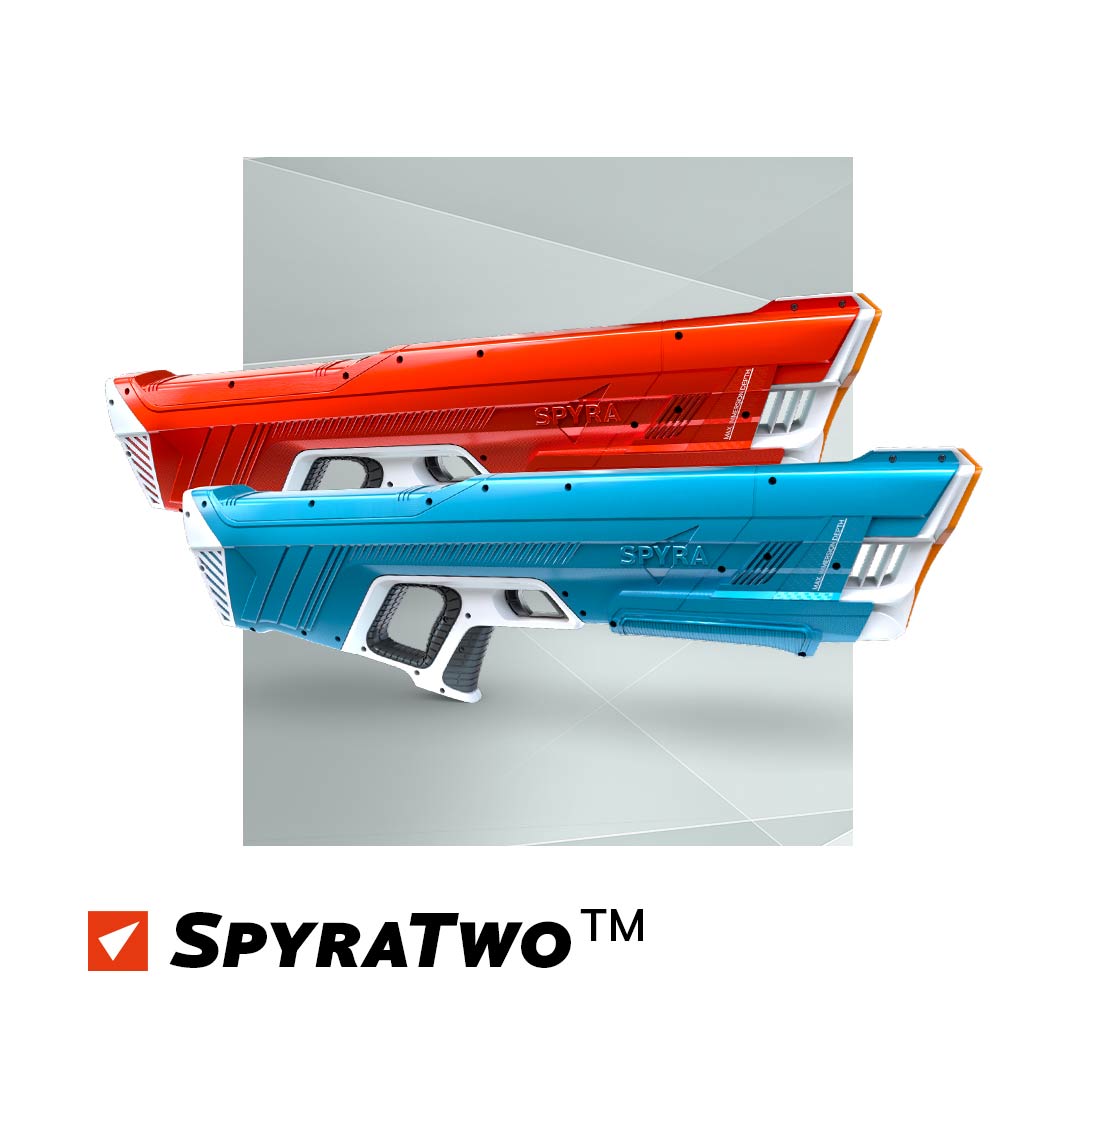 SpyraTwo™